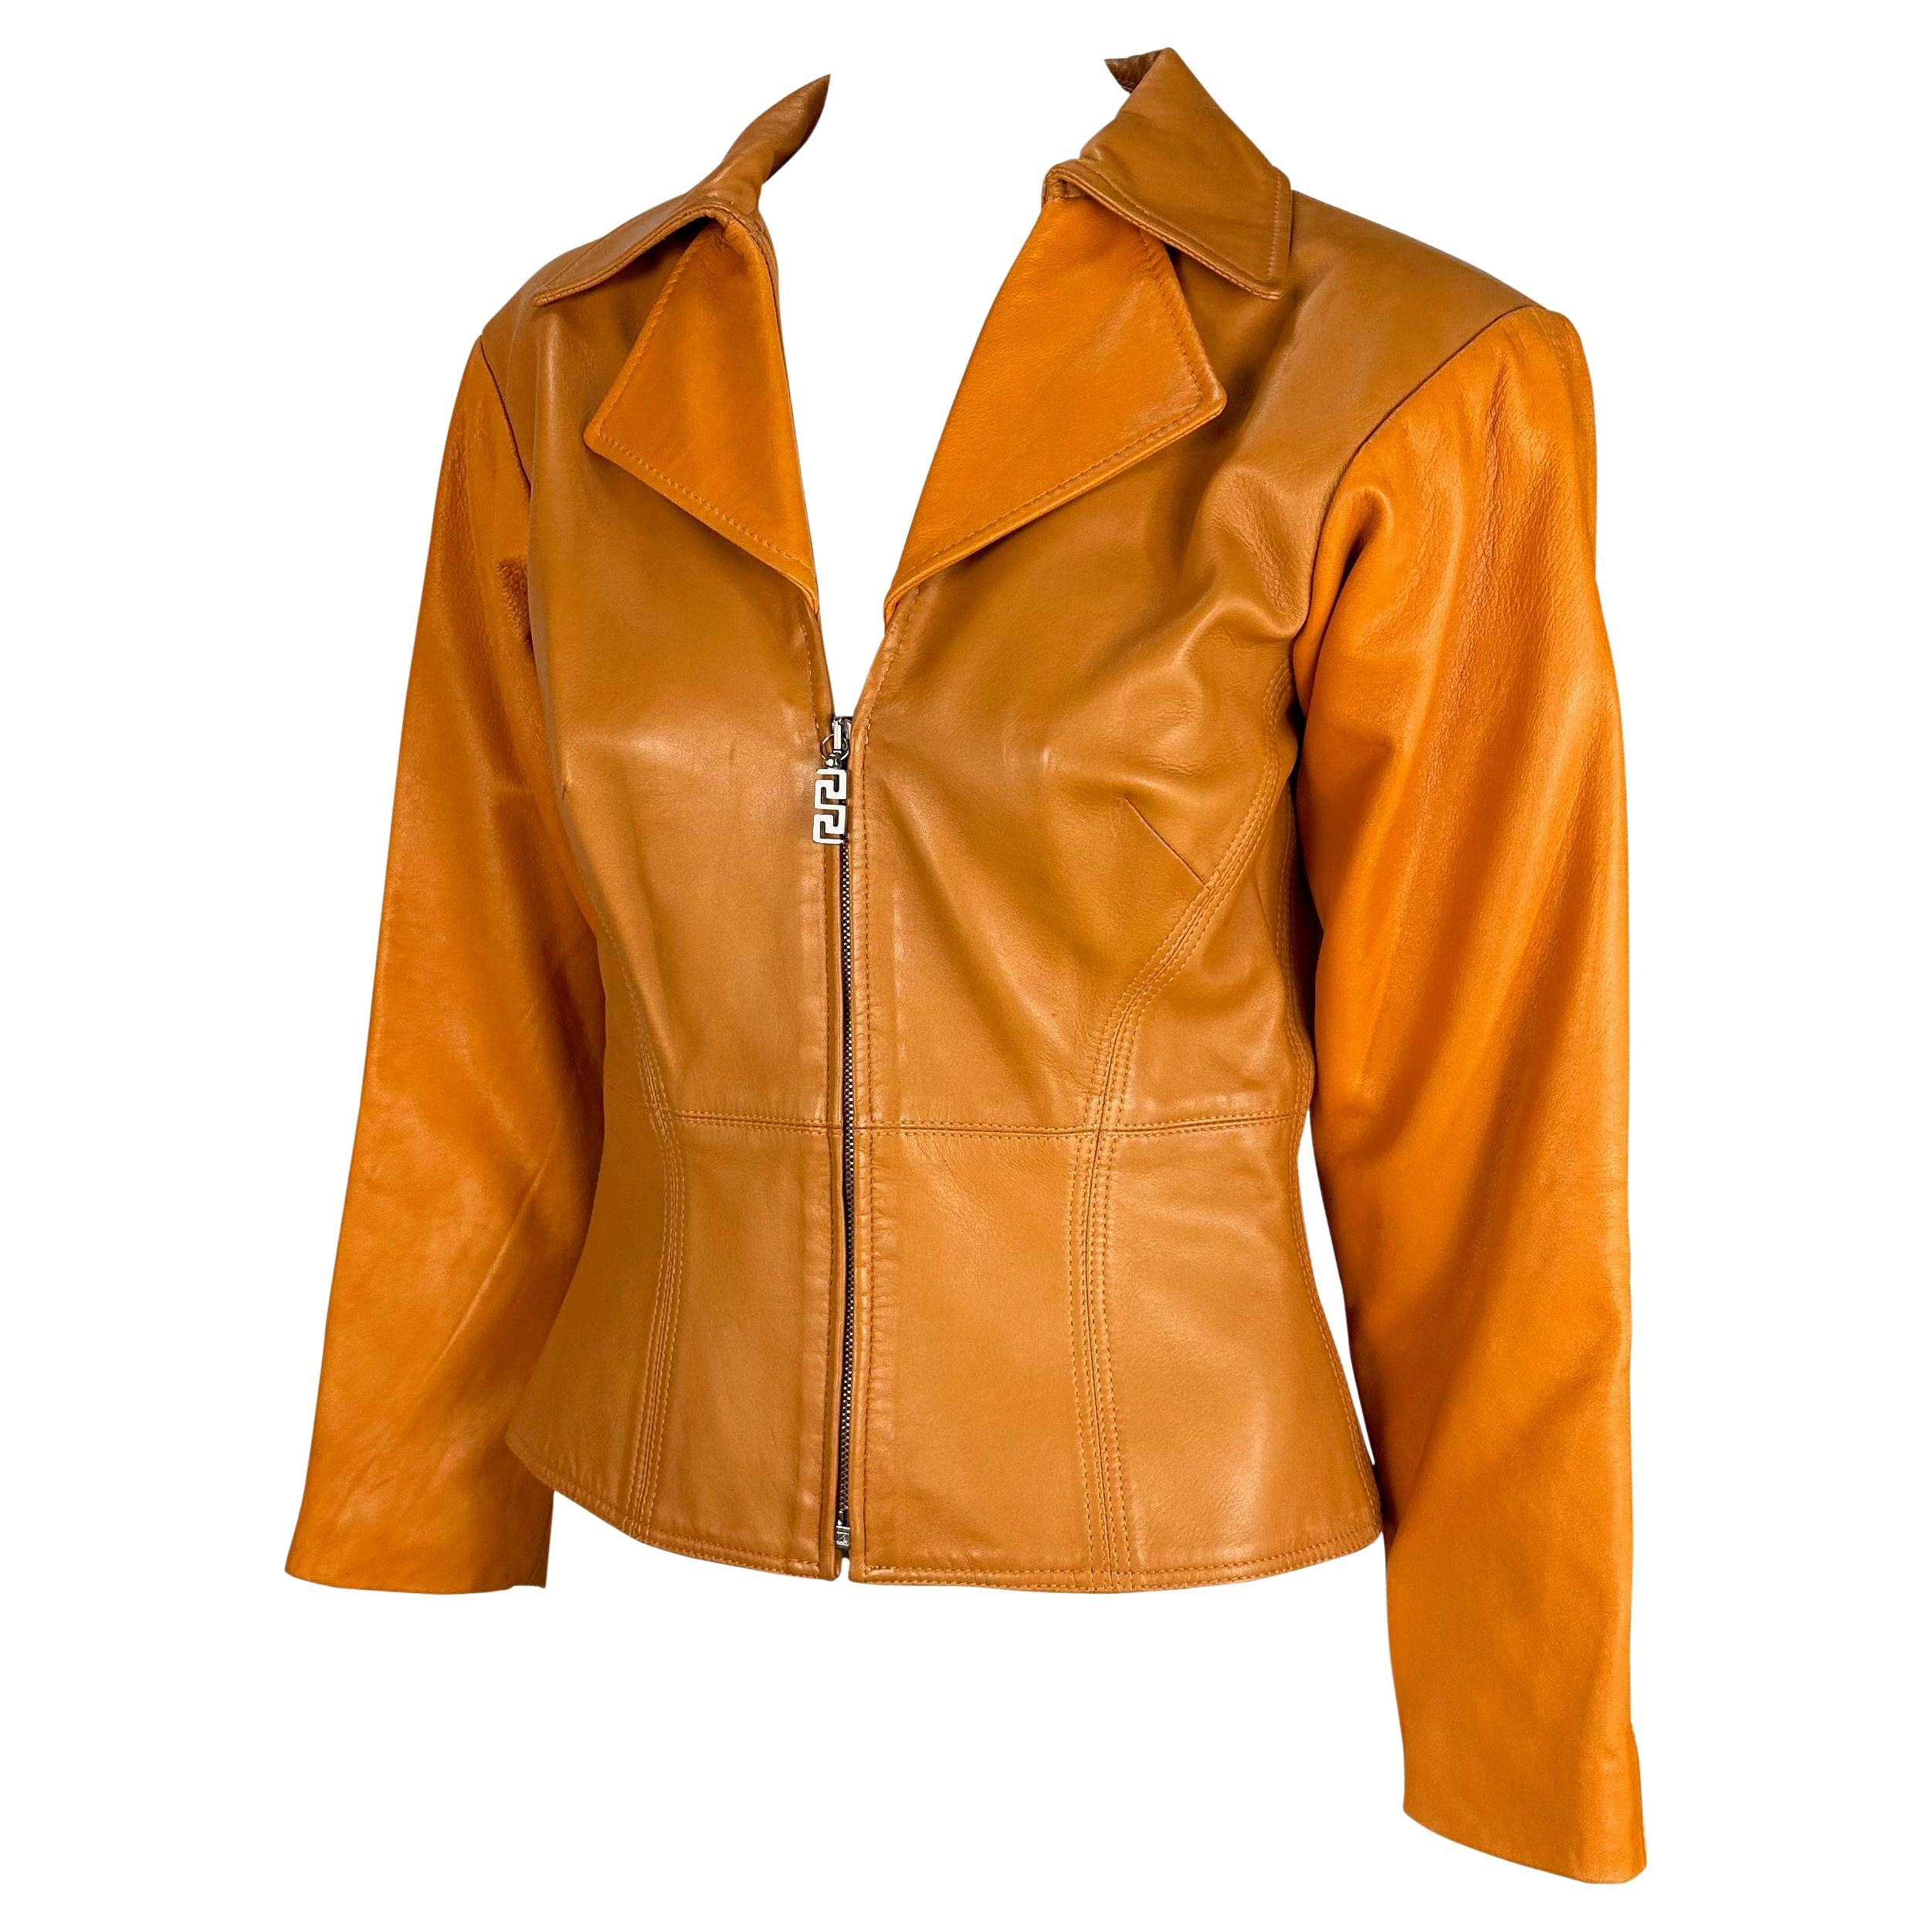 Voici une magnifique veste Gianni Versace Couture en cuir orange, dessinée par Donatella Versace. Cette pièce unique est dotée d'un col, d'une encolure profonde et d'une demi-fermeture à glissière. Conçue par Donatella Versace au début des années